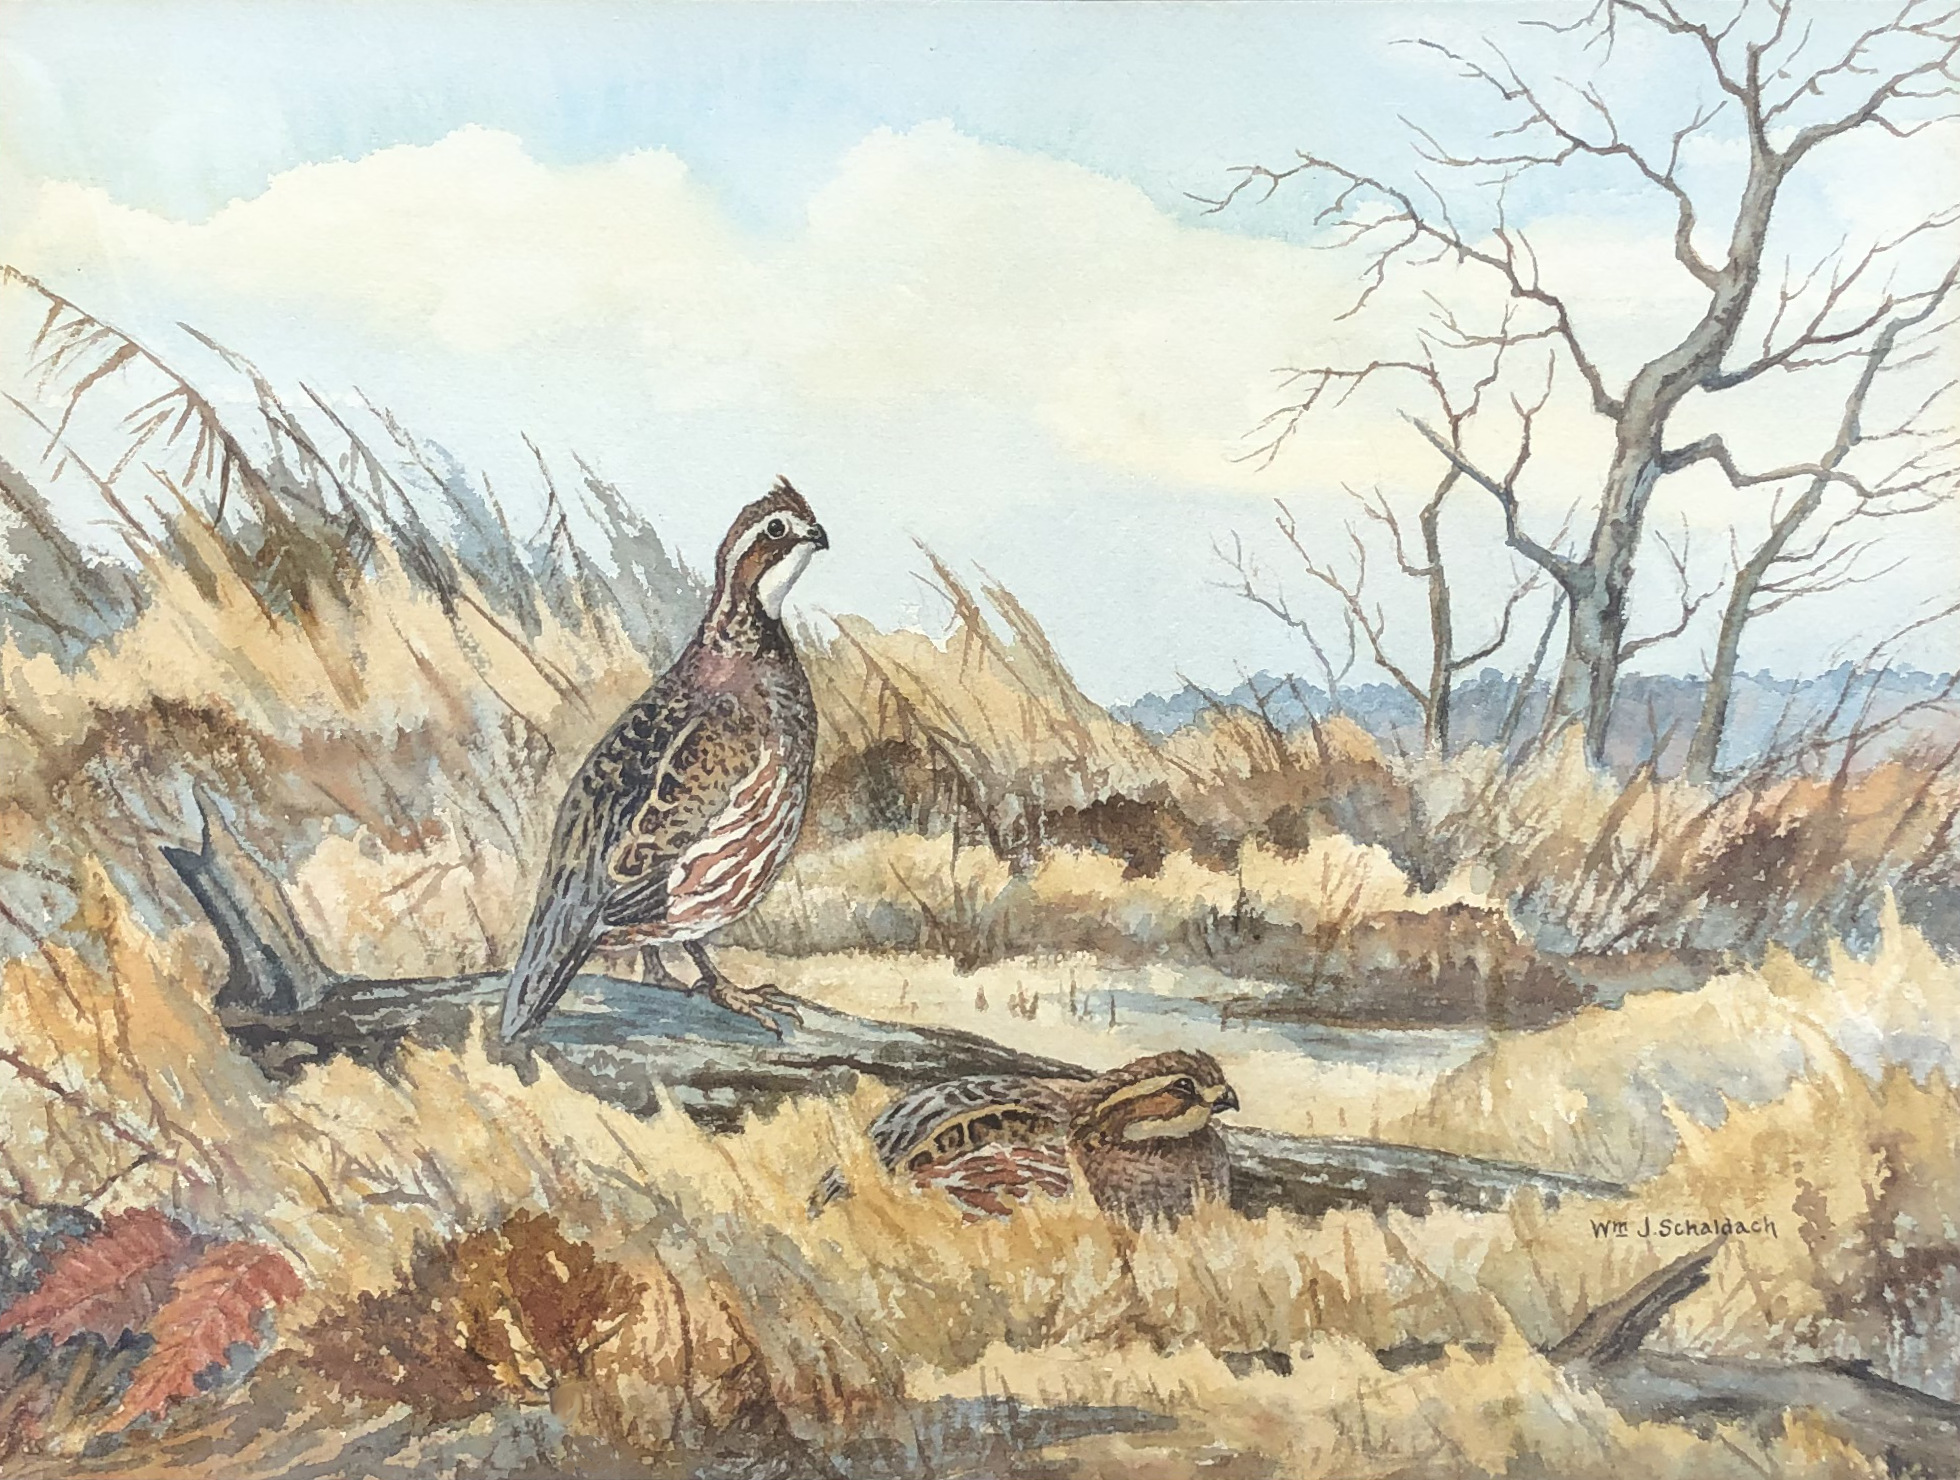 William Schaldach - Bobwhite Quail, Watercolor, 13.75 x 17.75 inches